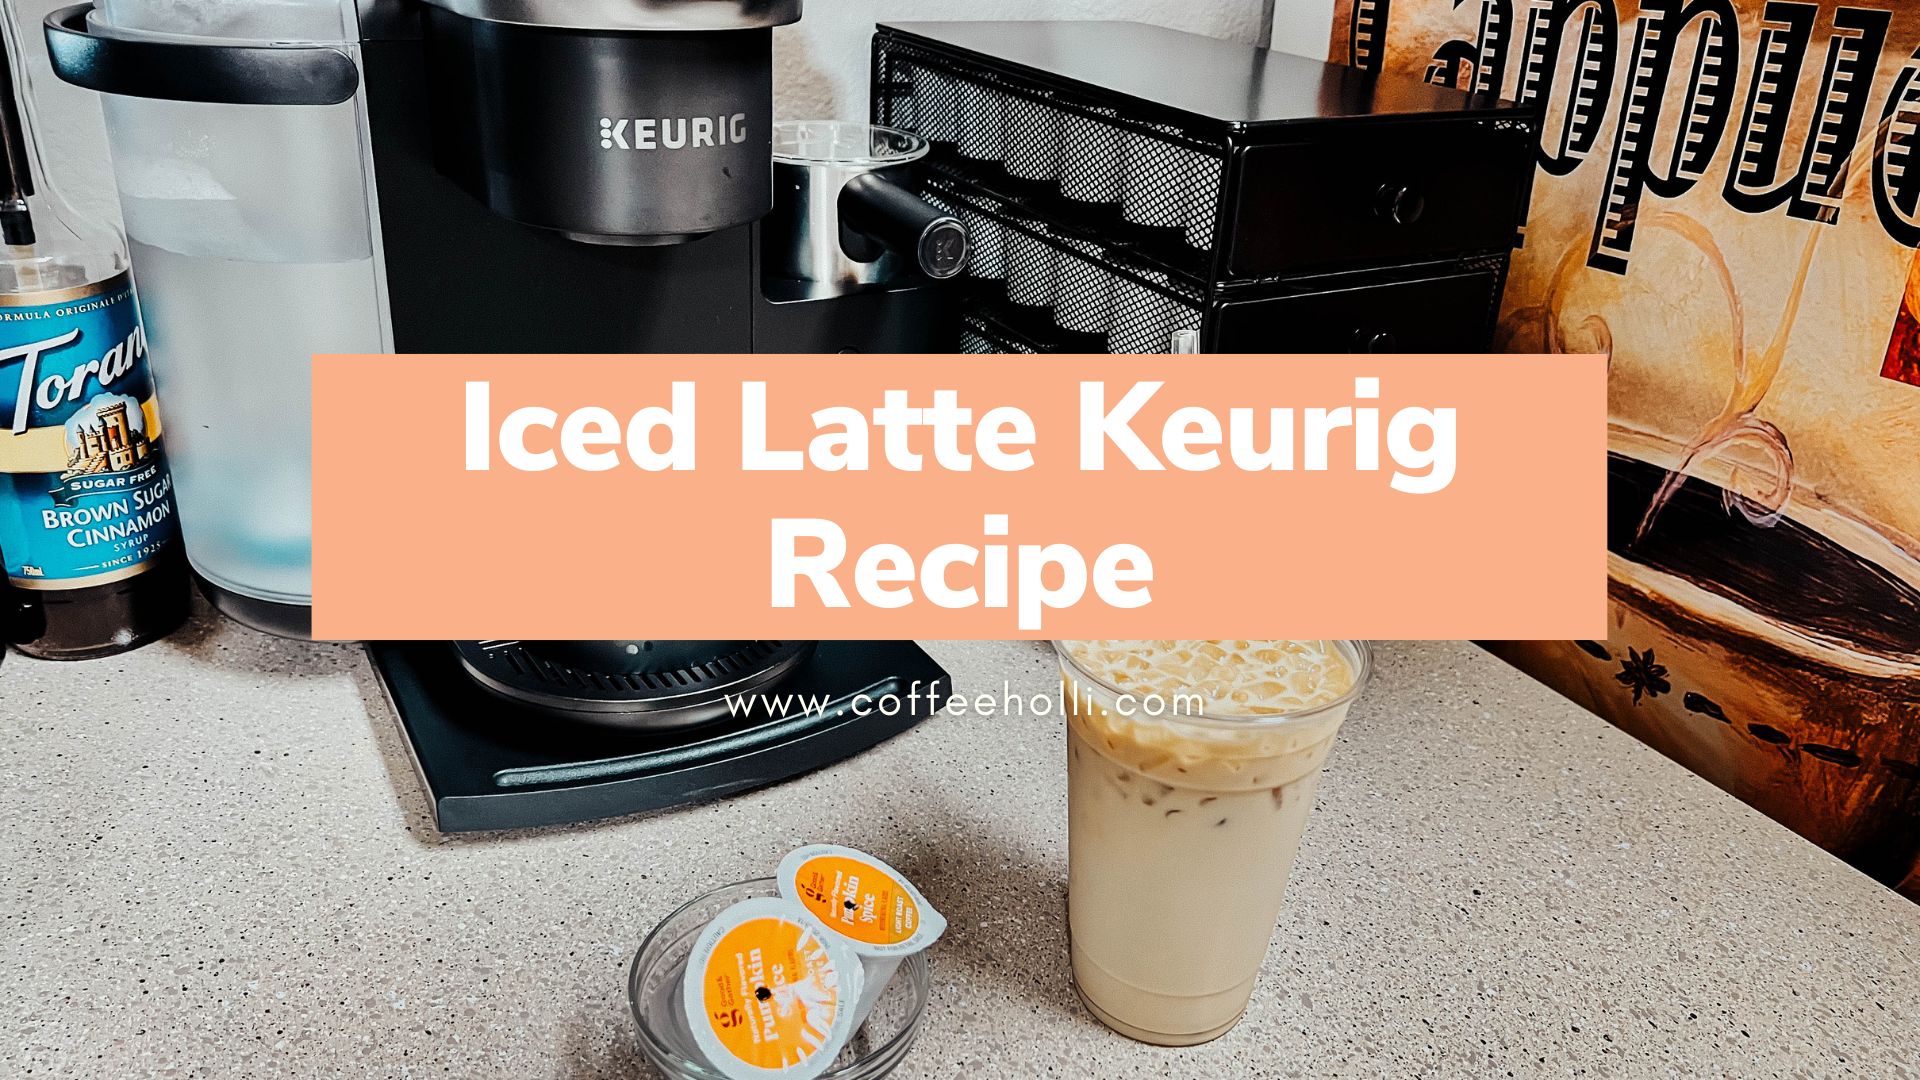 Iced Latte Keurig Recipe